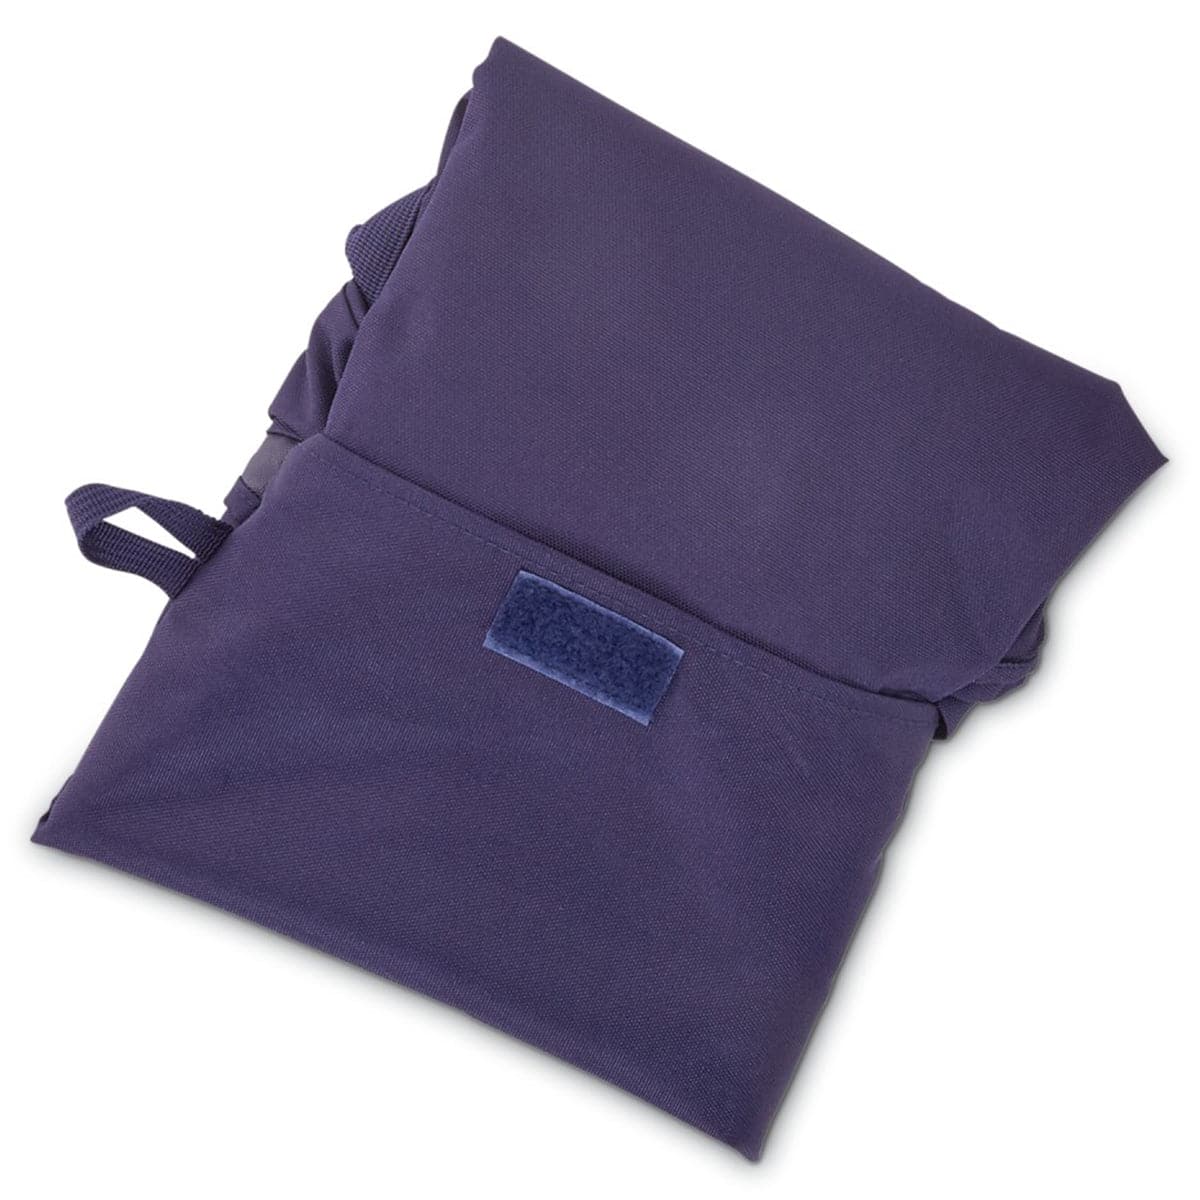 Samsonite Foldaway Tote Bag